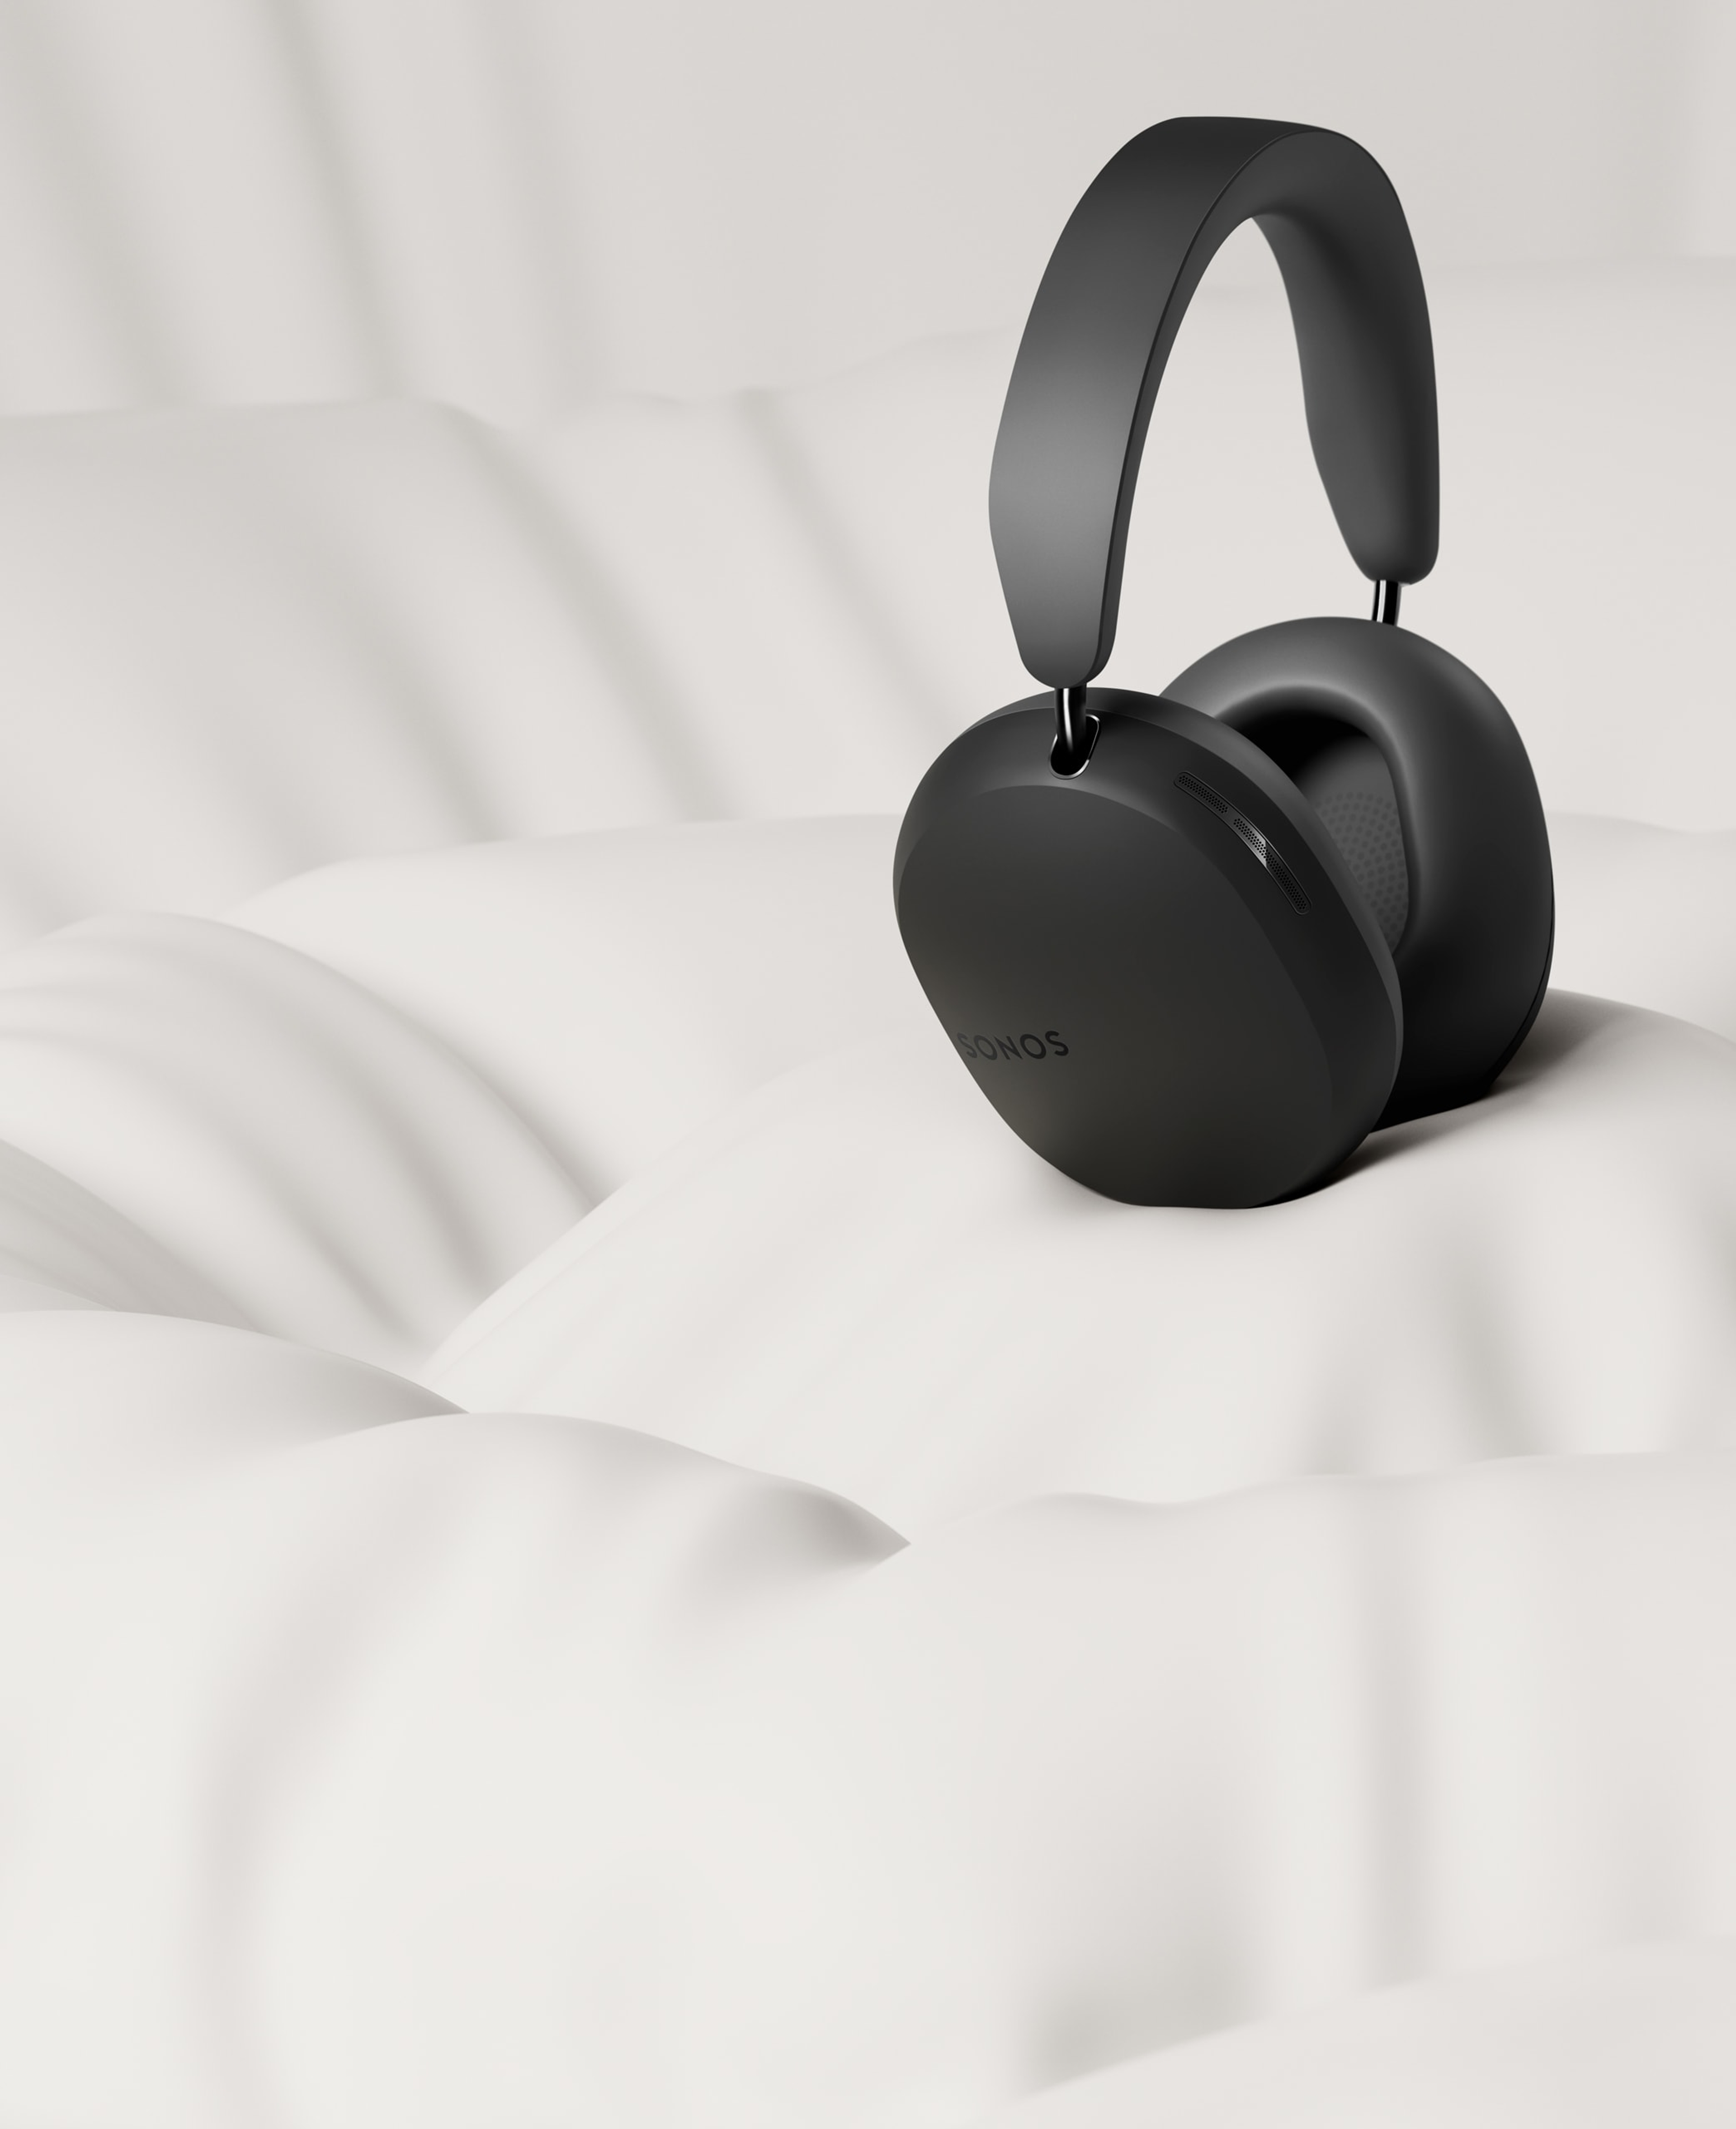 Twee zwarte Sonos Ace koptelefoons tegen een kussenachtige witte achtergrond